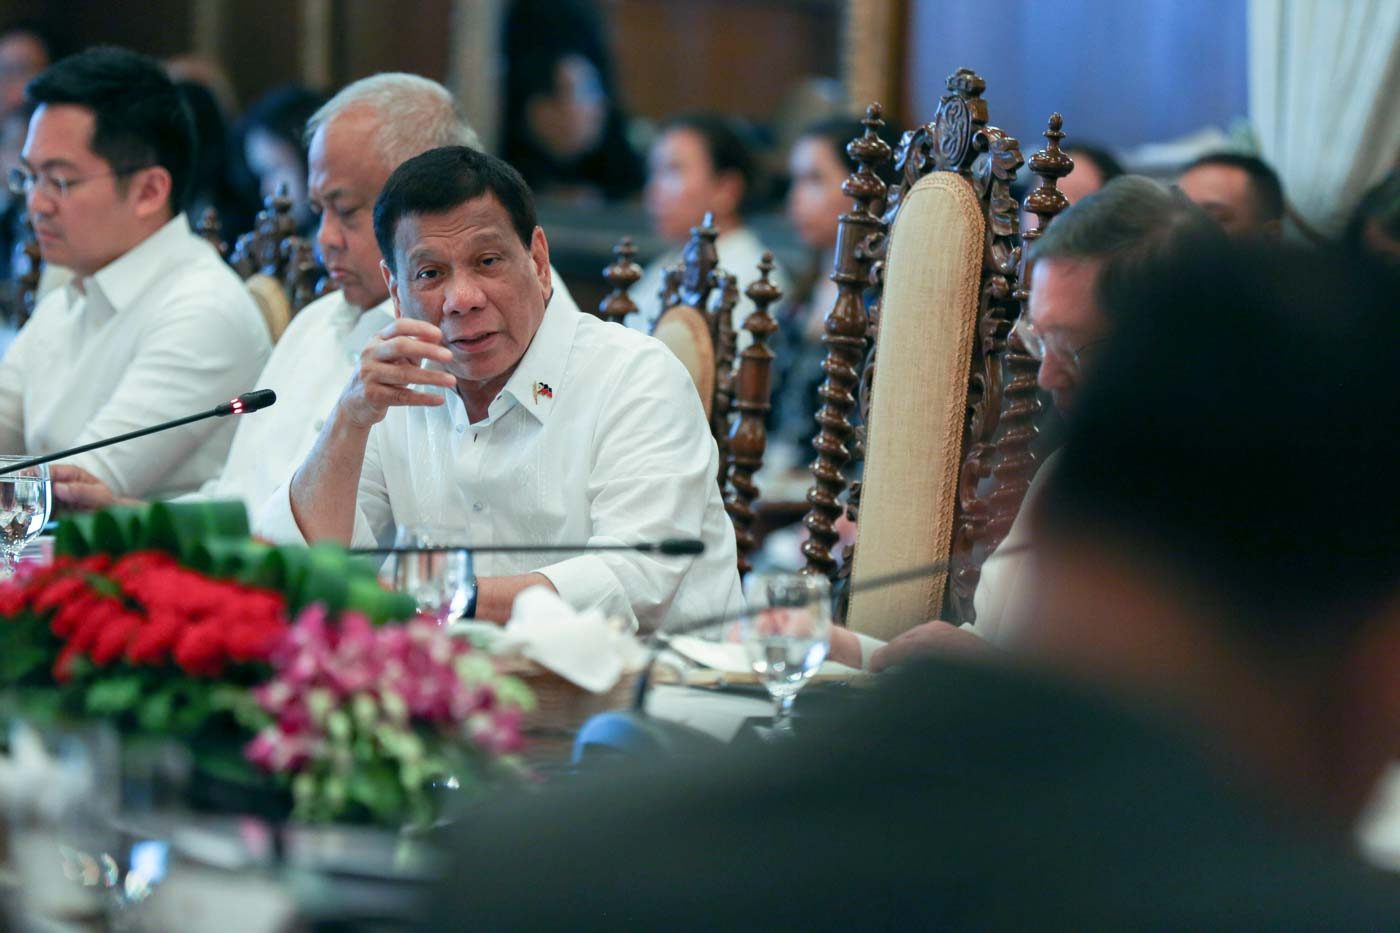 Cabinet members hail Duterte at halfway mark of presidency